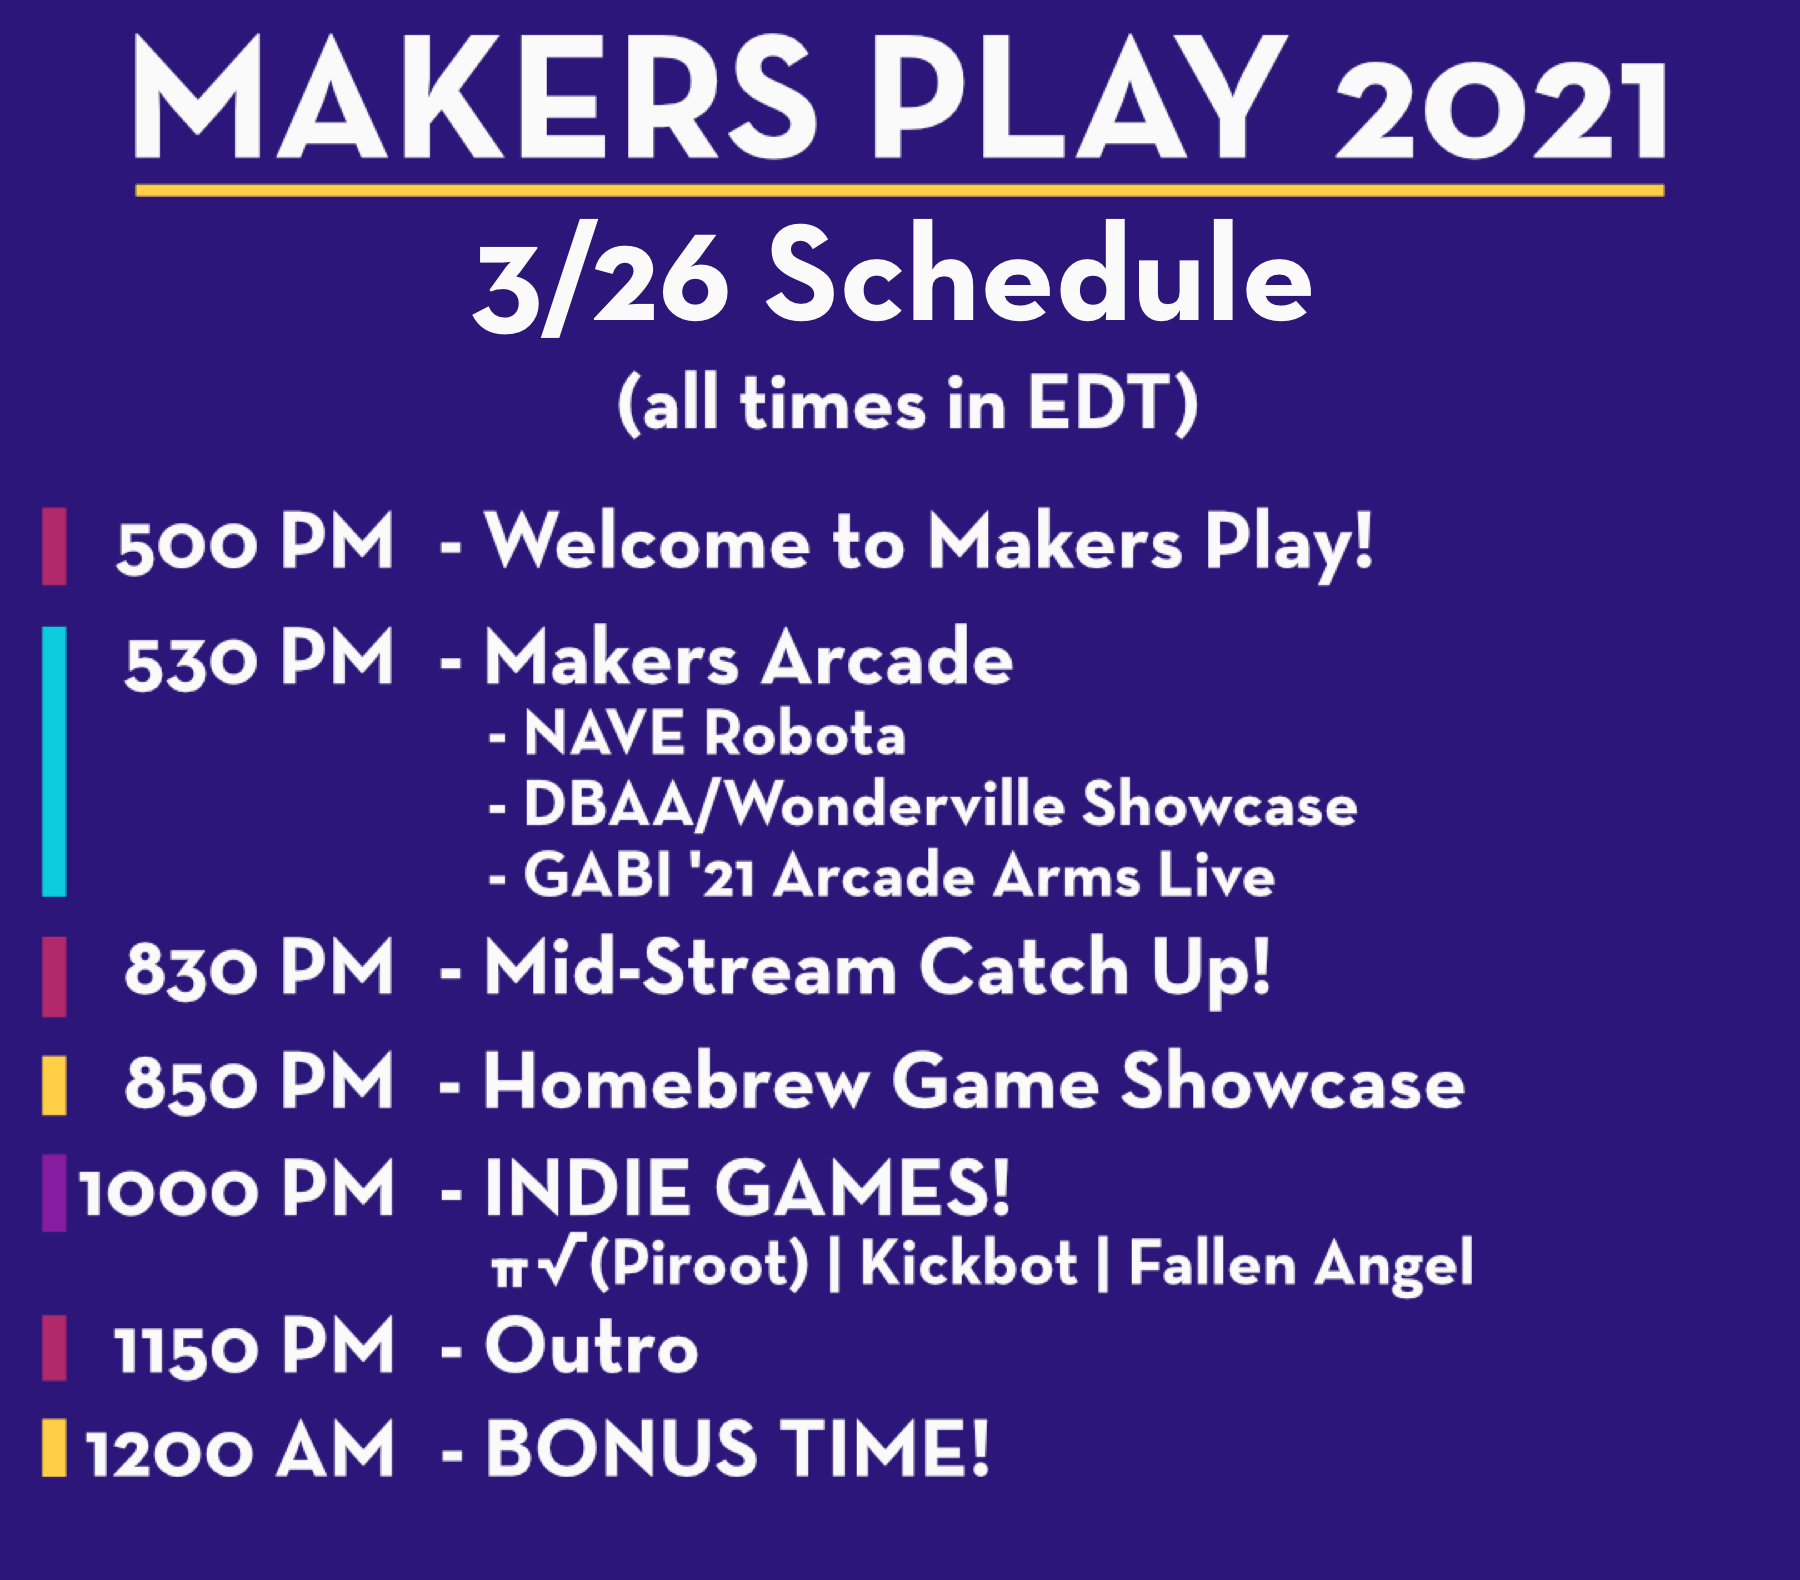 IMS_MakersPlayWebsiteSchedule_Day1-trim